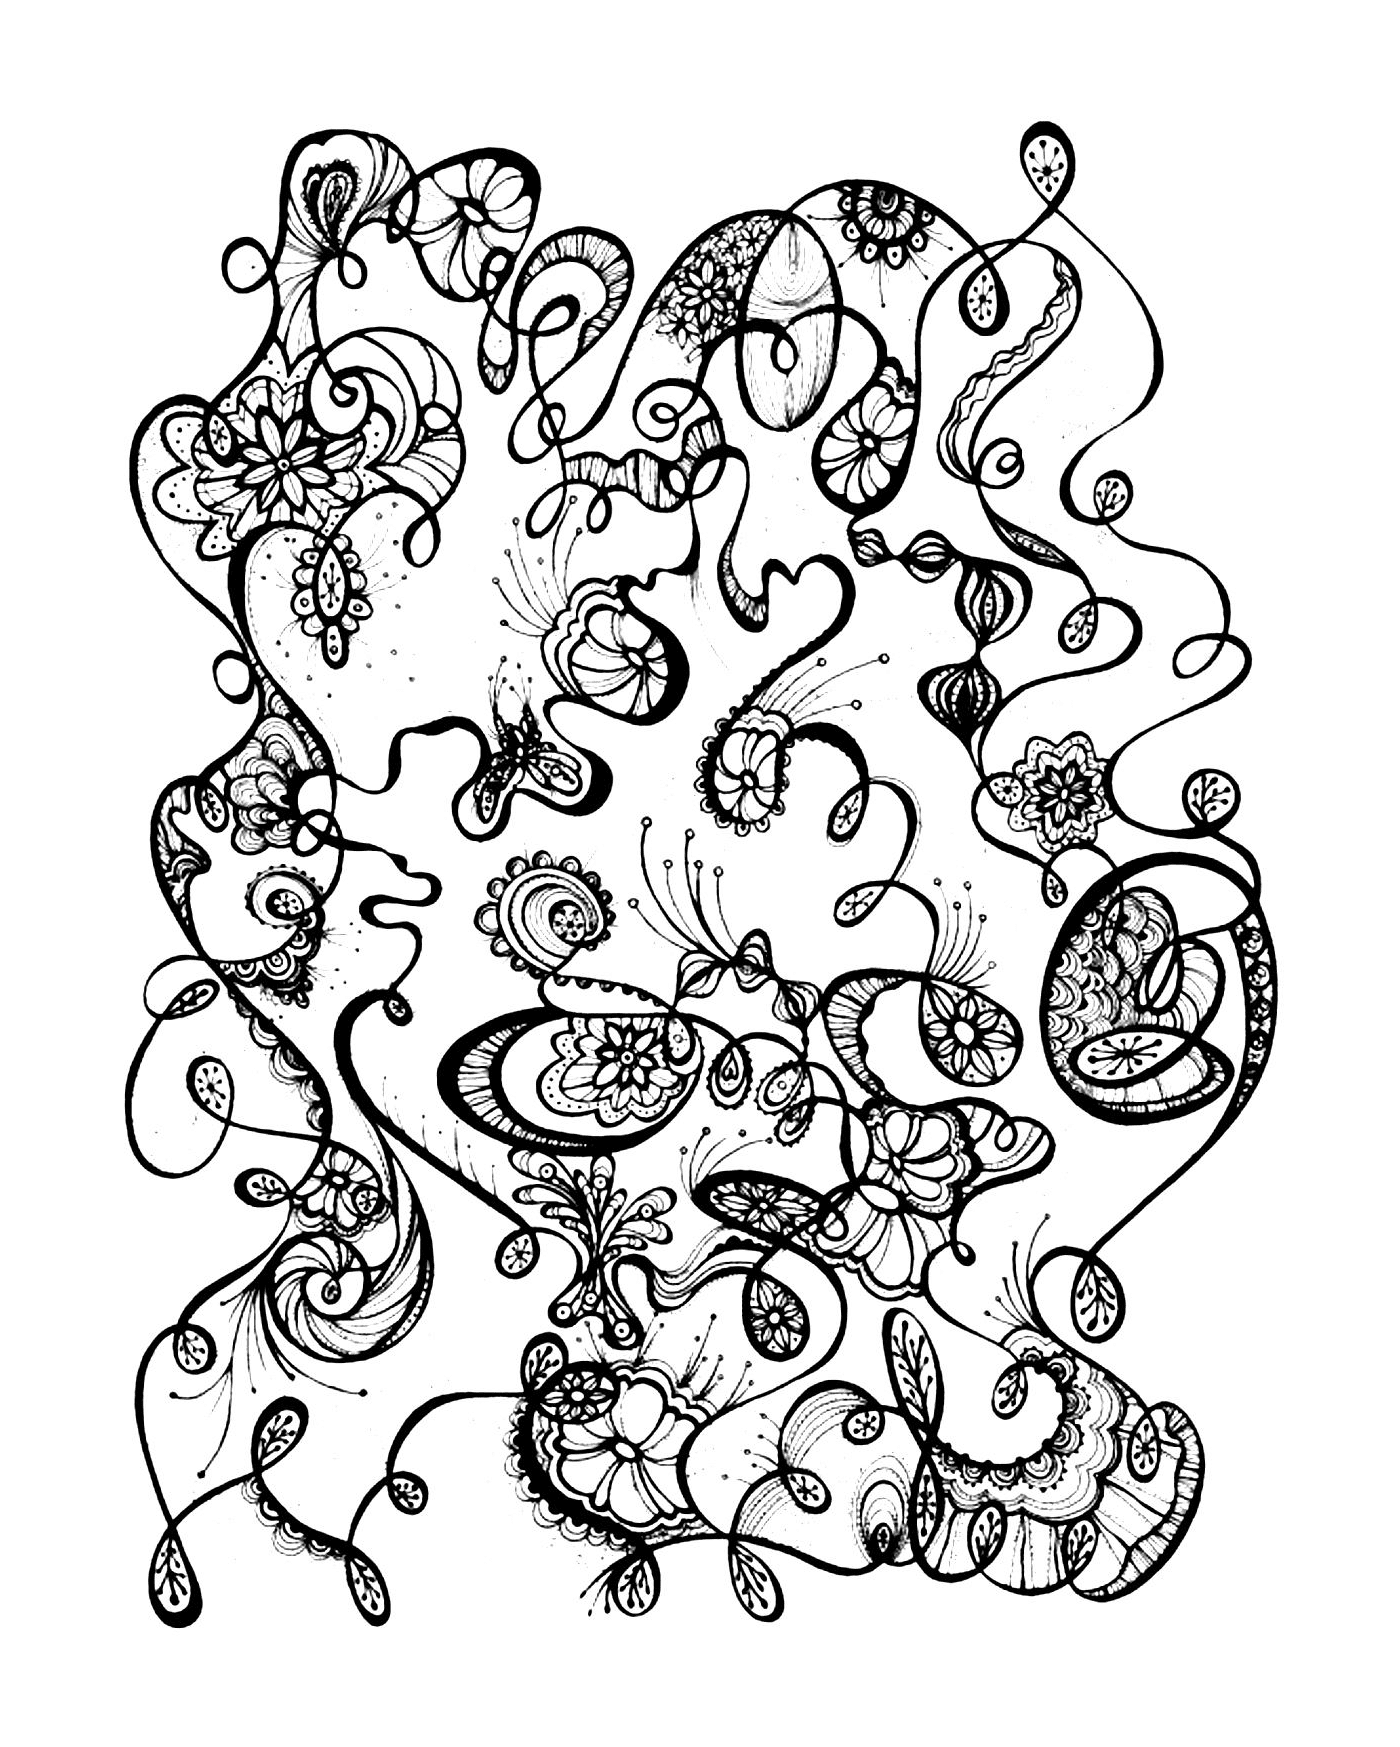   un motif abstrait en noir et blanc avec des fleurs 